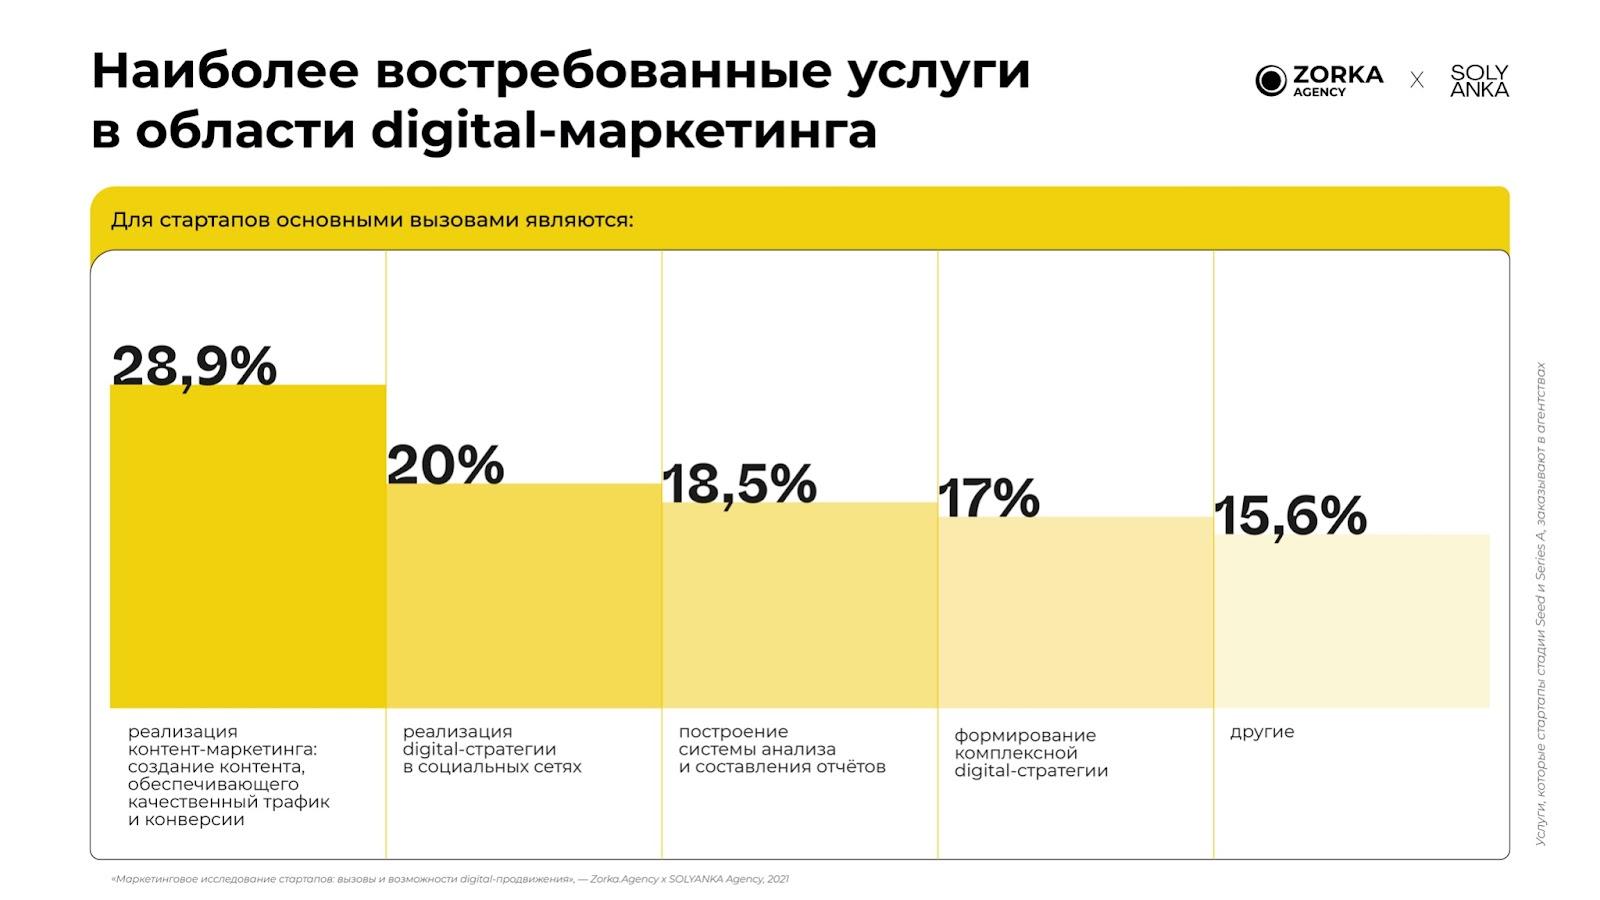 Исследование стратегий digital-маркетинга у стартапов Zorka.Agency